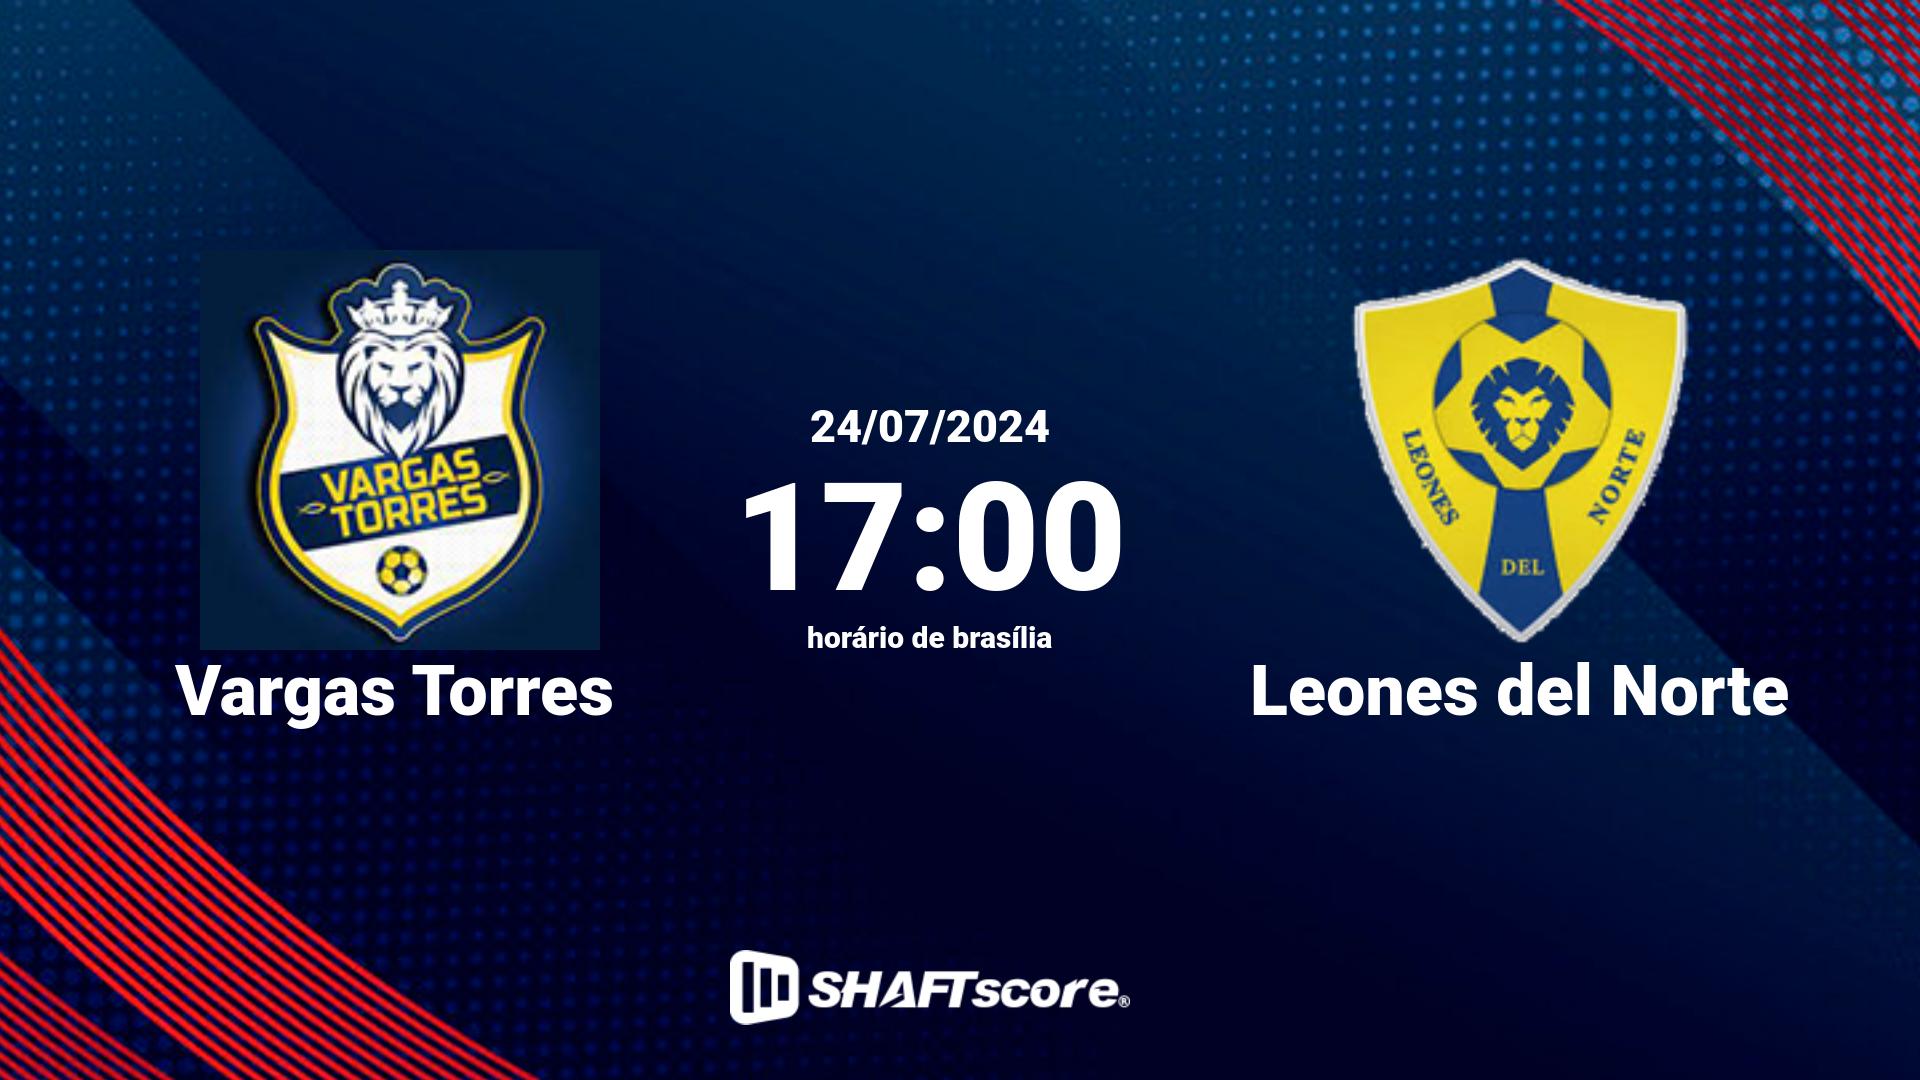 Estatísticas do jogo Vargas Torres vs Leones del Norte 24.07 17:00